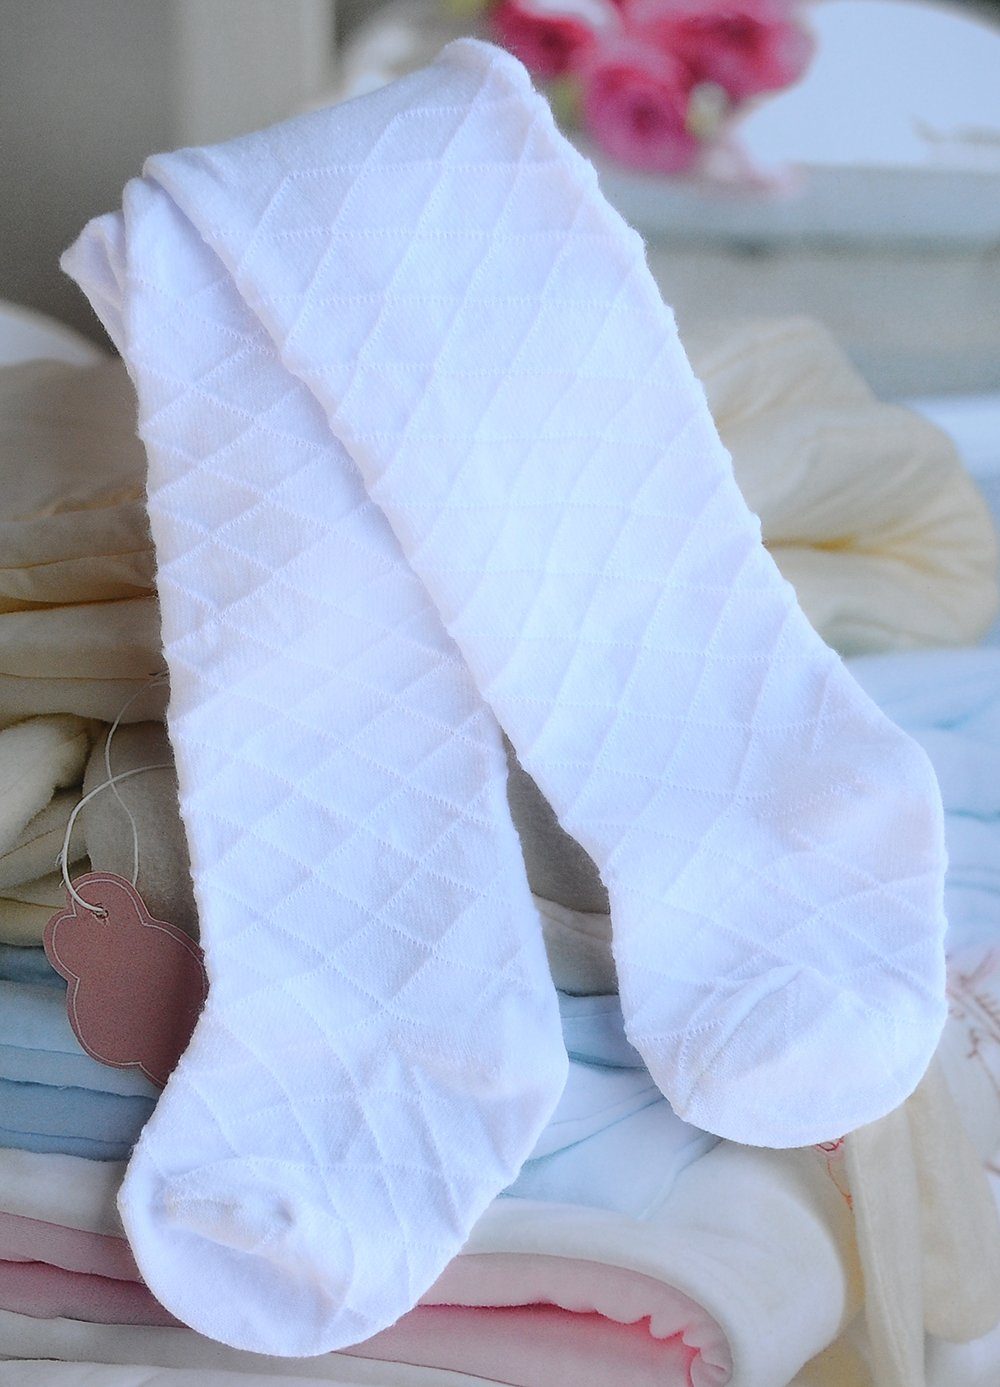 La Bortini Strumpfhose weiße Strumpfhose für Baby und Kleinkinder festlich